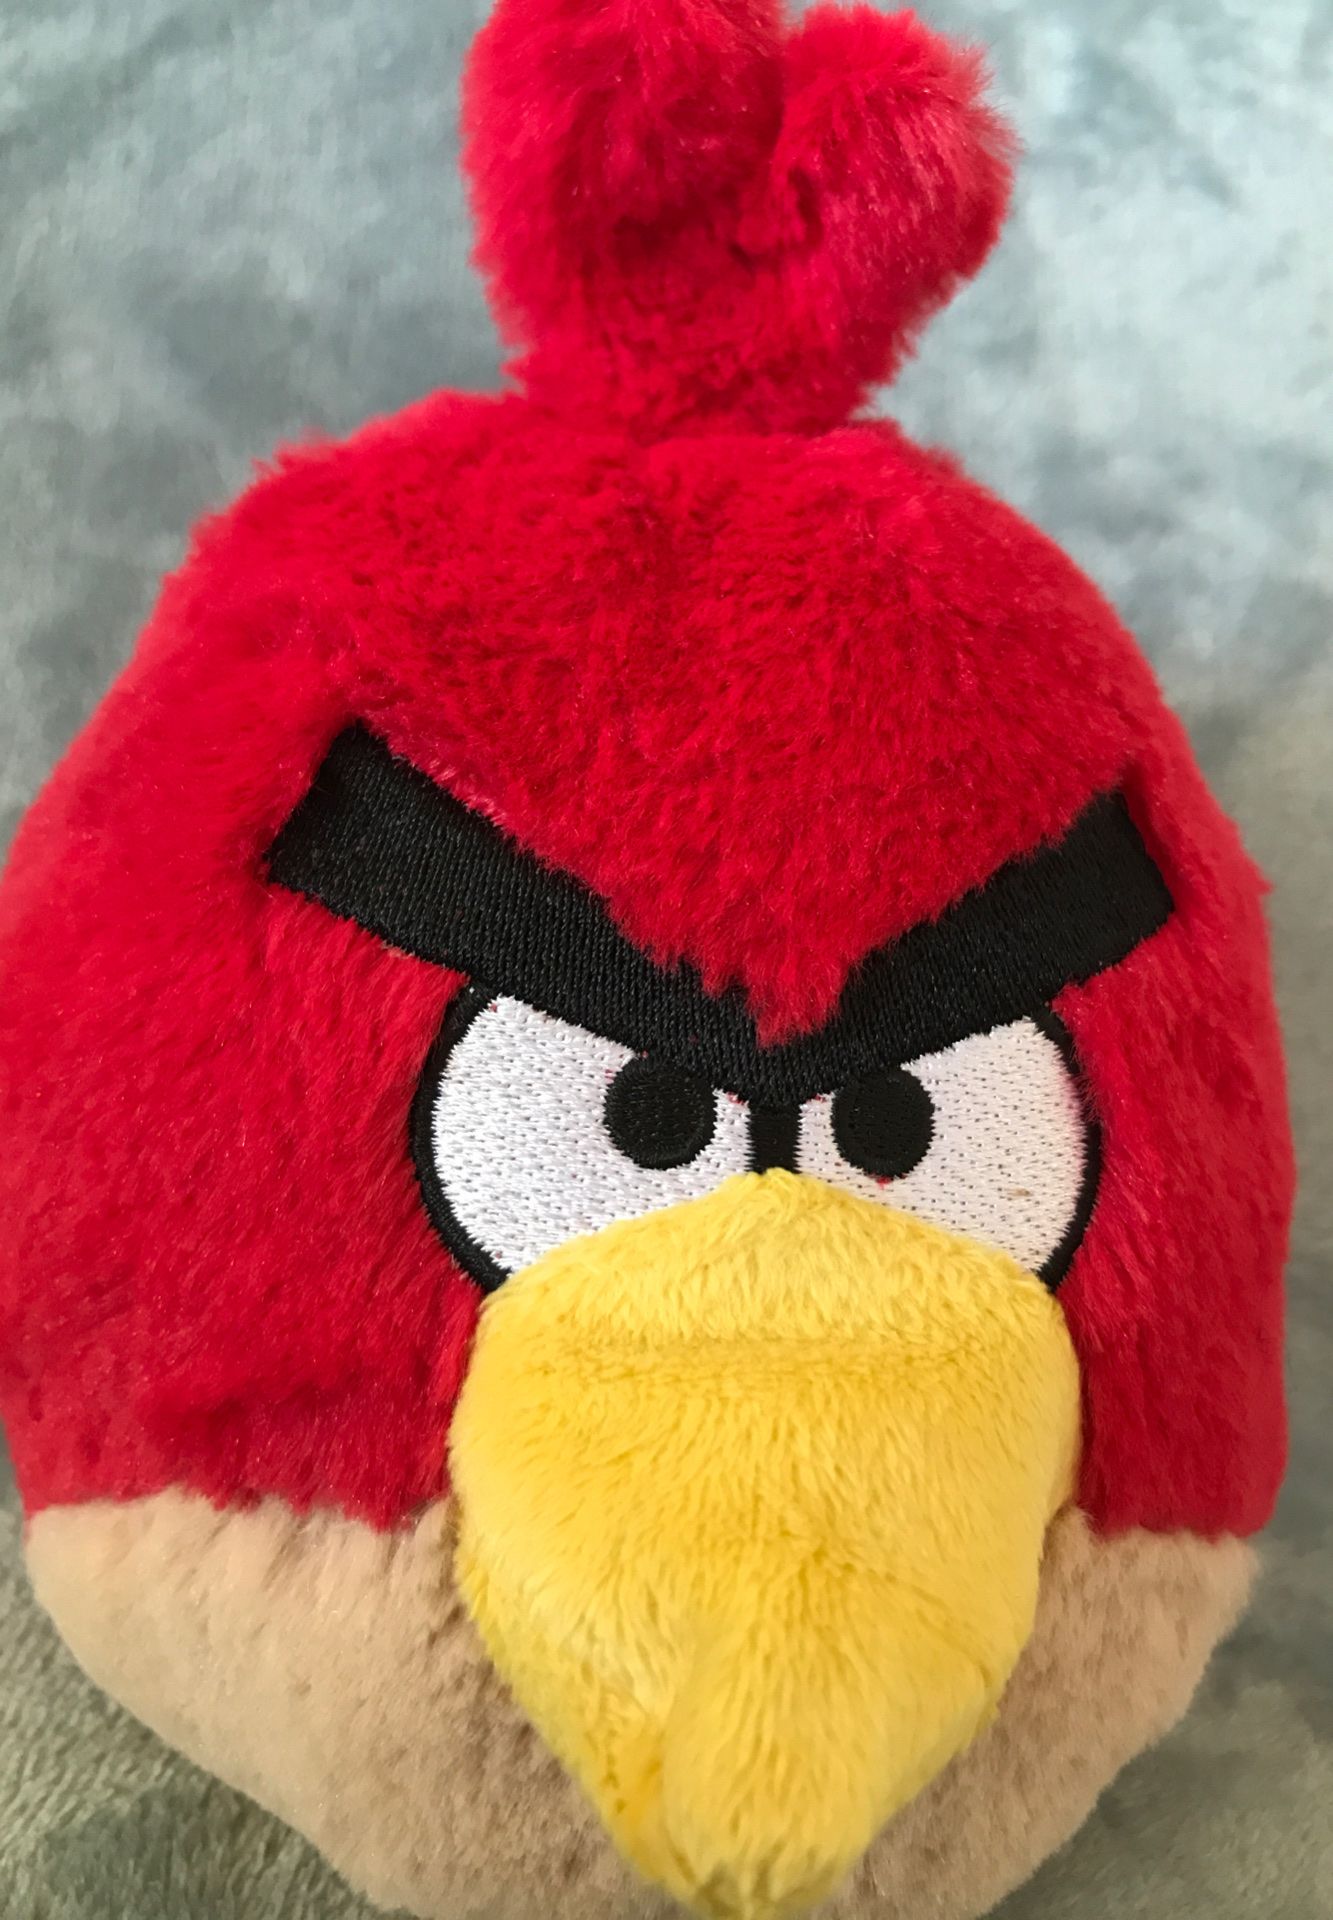 6” Angry Bird stuffed animal